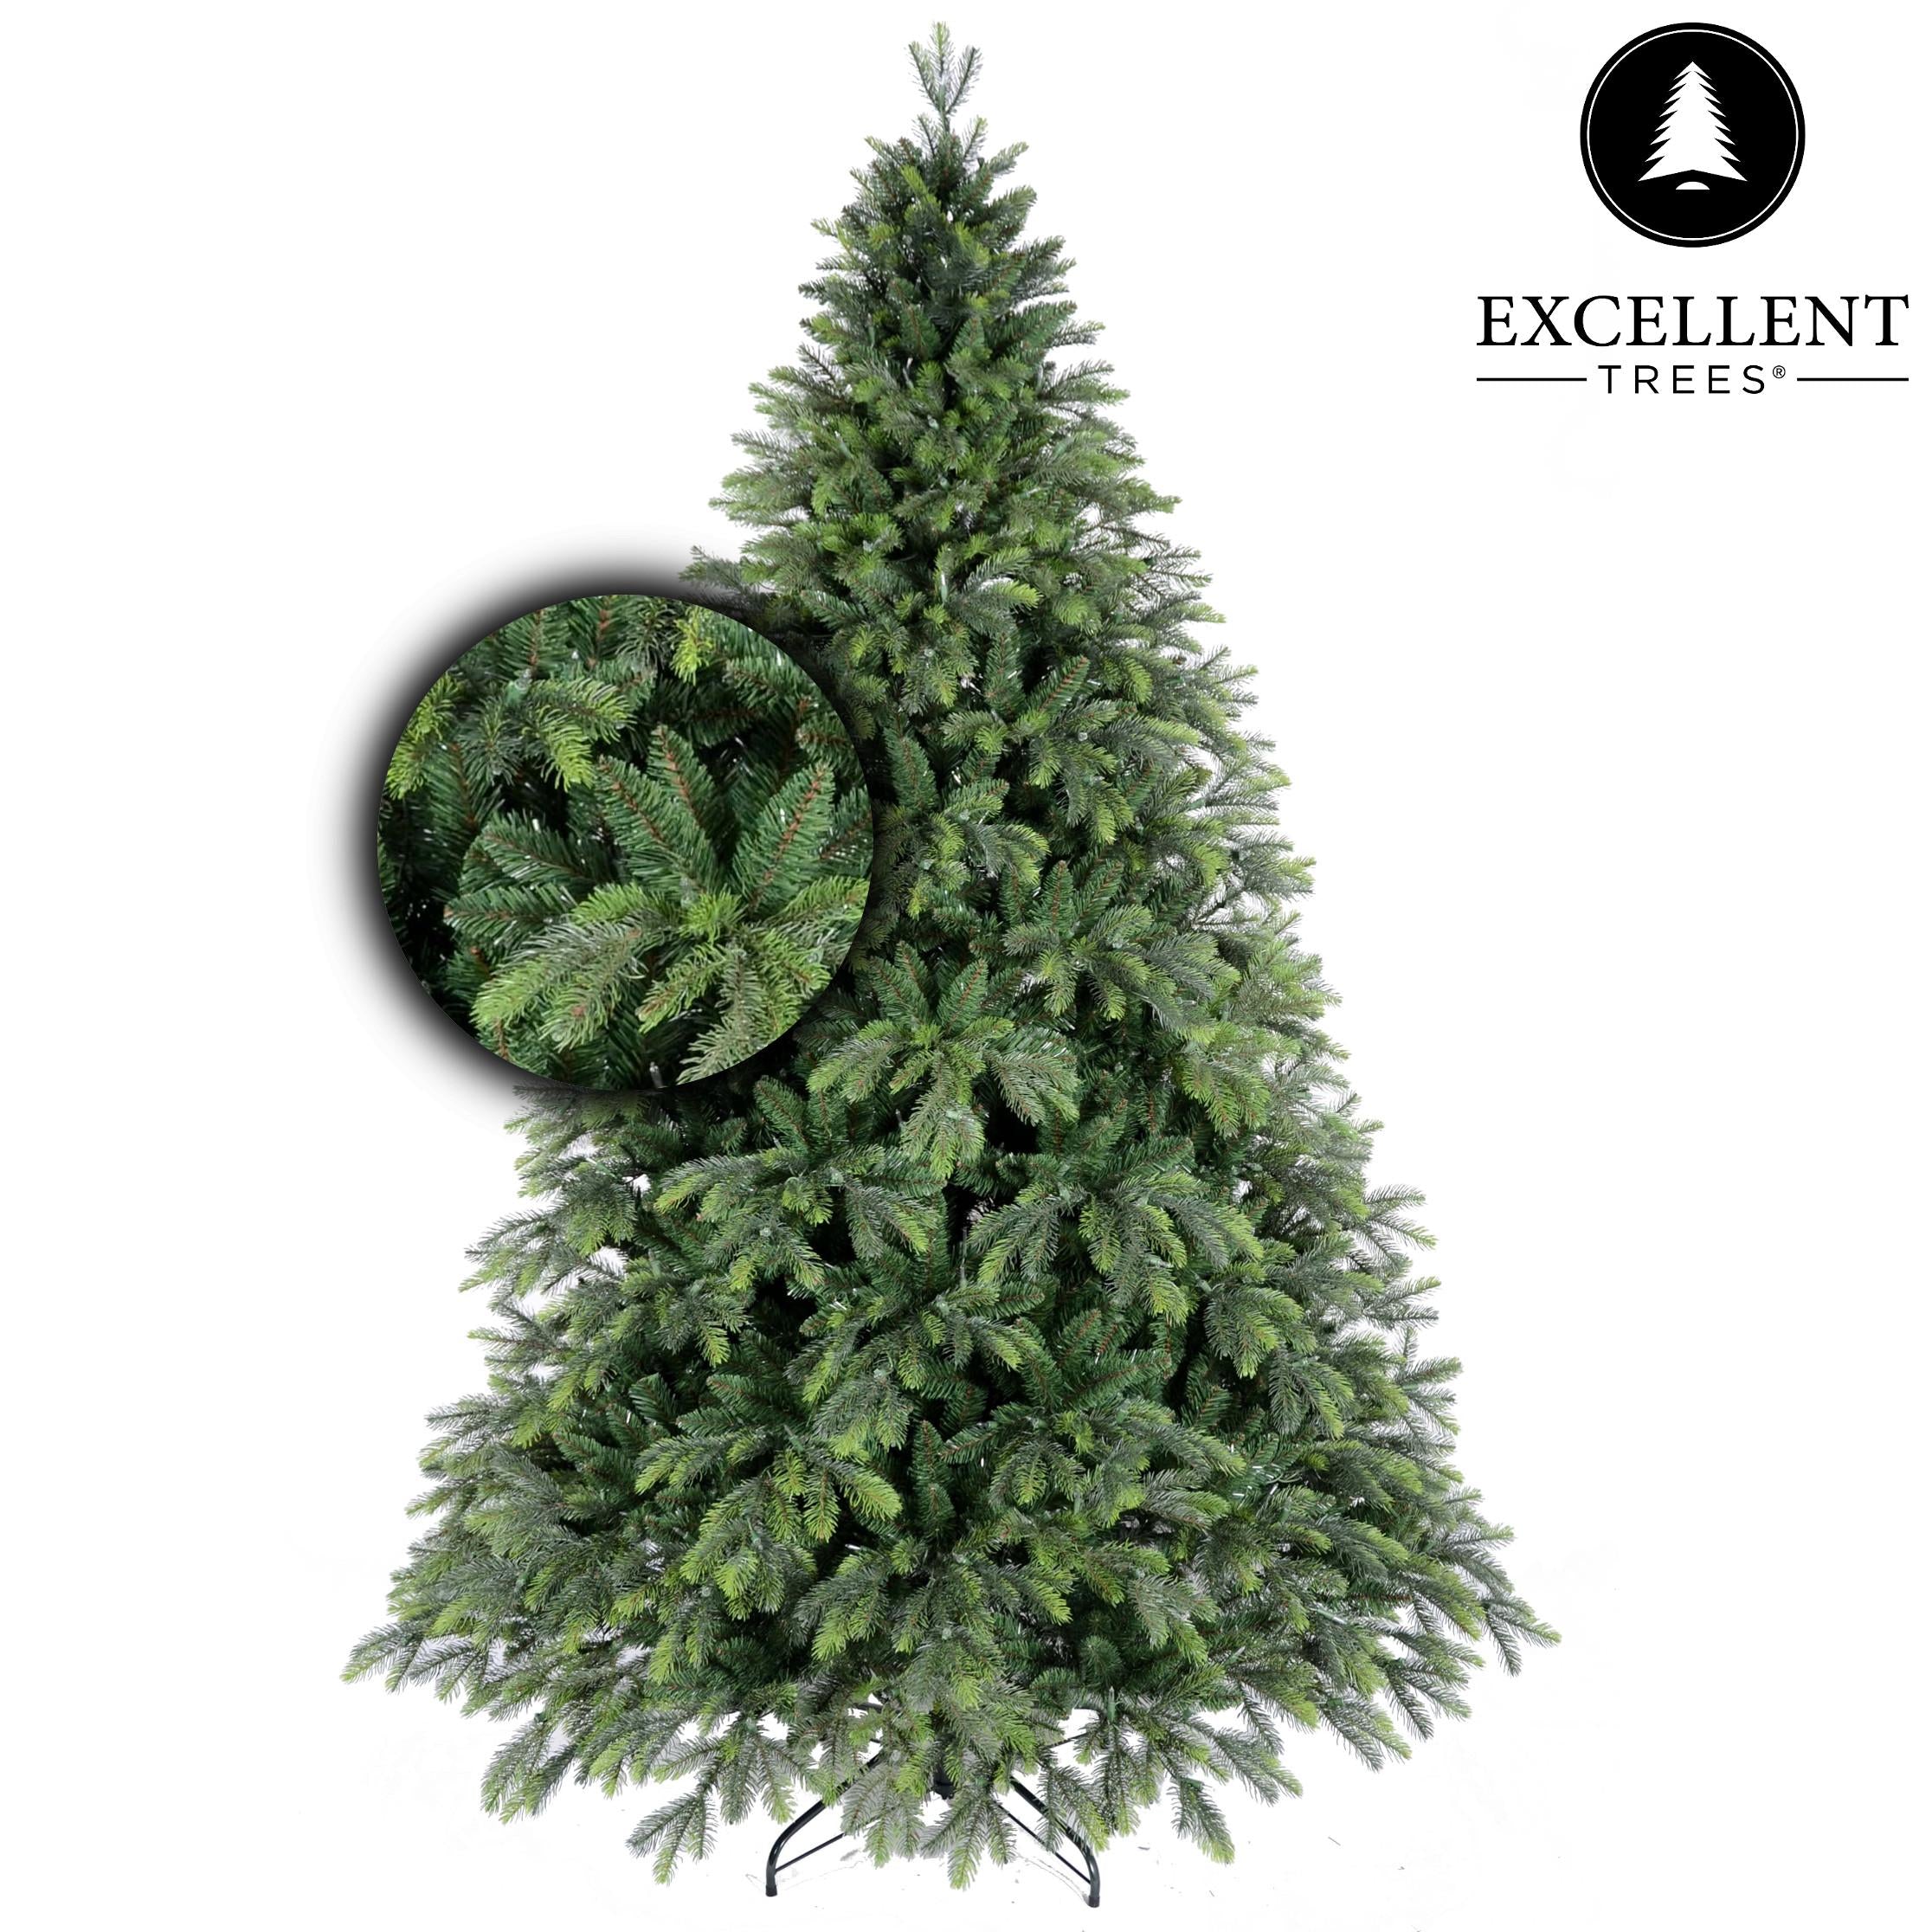 Premium Weihnachtsbaum Excellent Trees® Kalmar 150 cm - Luxusausführung